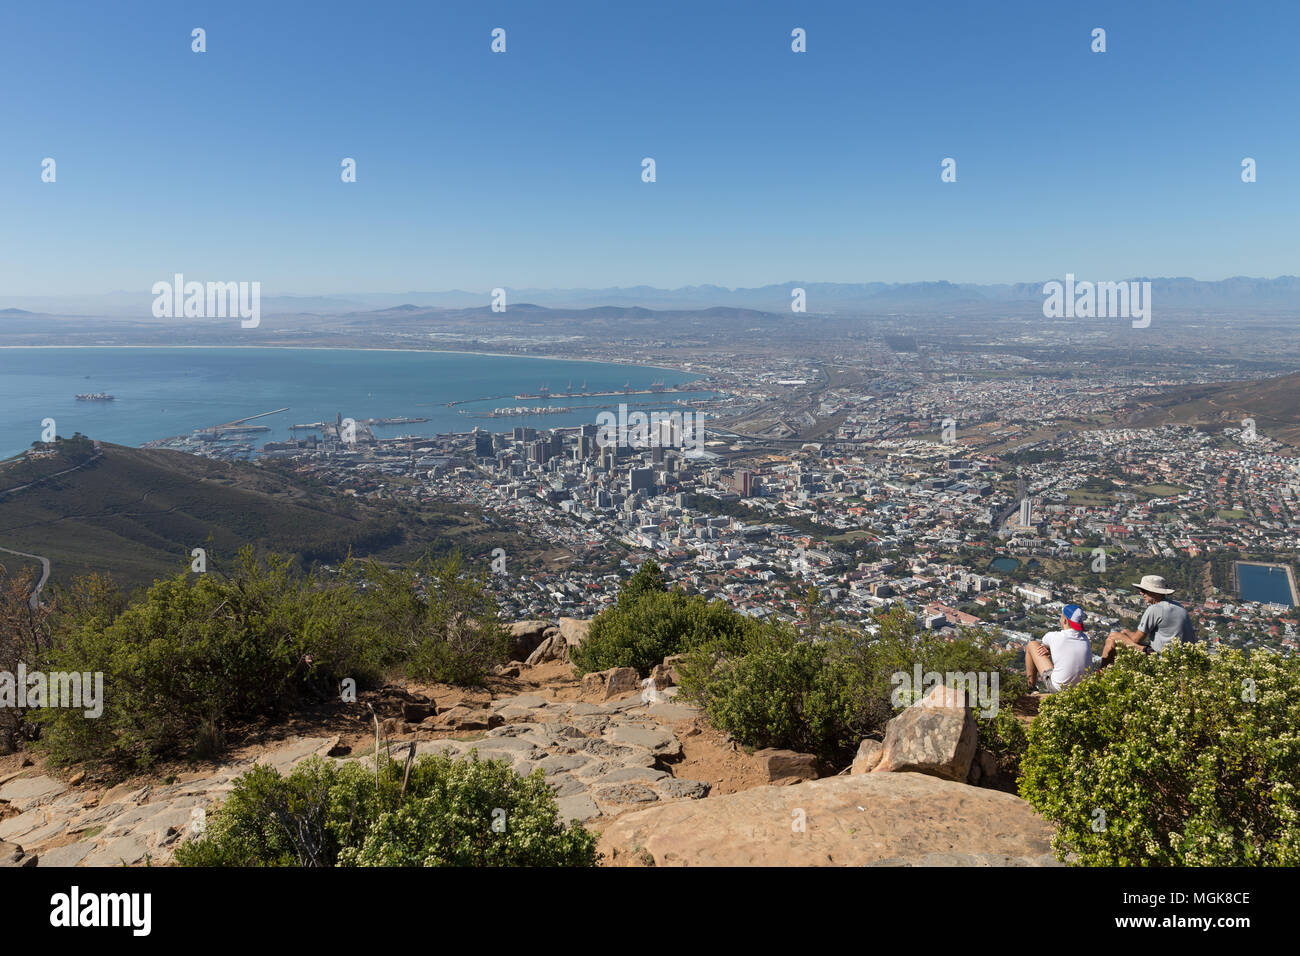 Gli escursionisti ammirare la vista su Cape Town City Bowl dalla parte superiore della testa di leone mountain Foto Stock